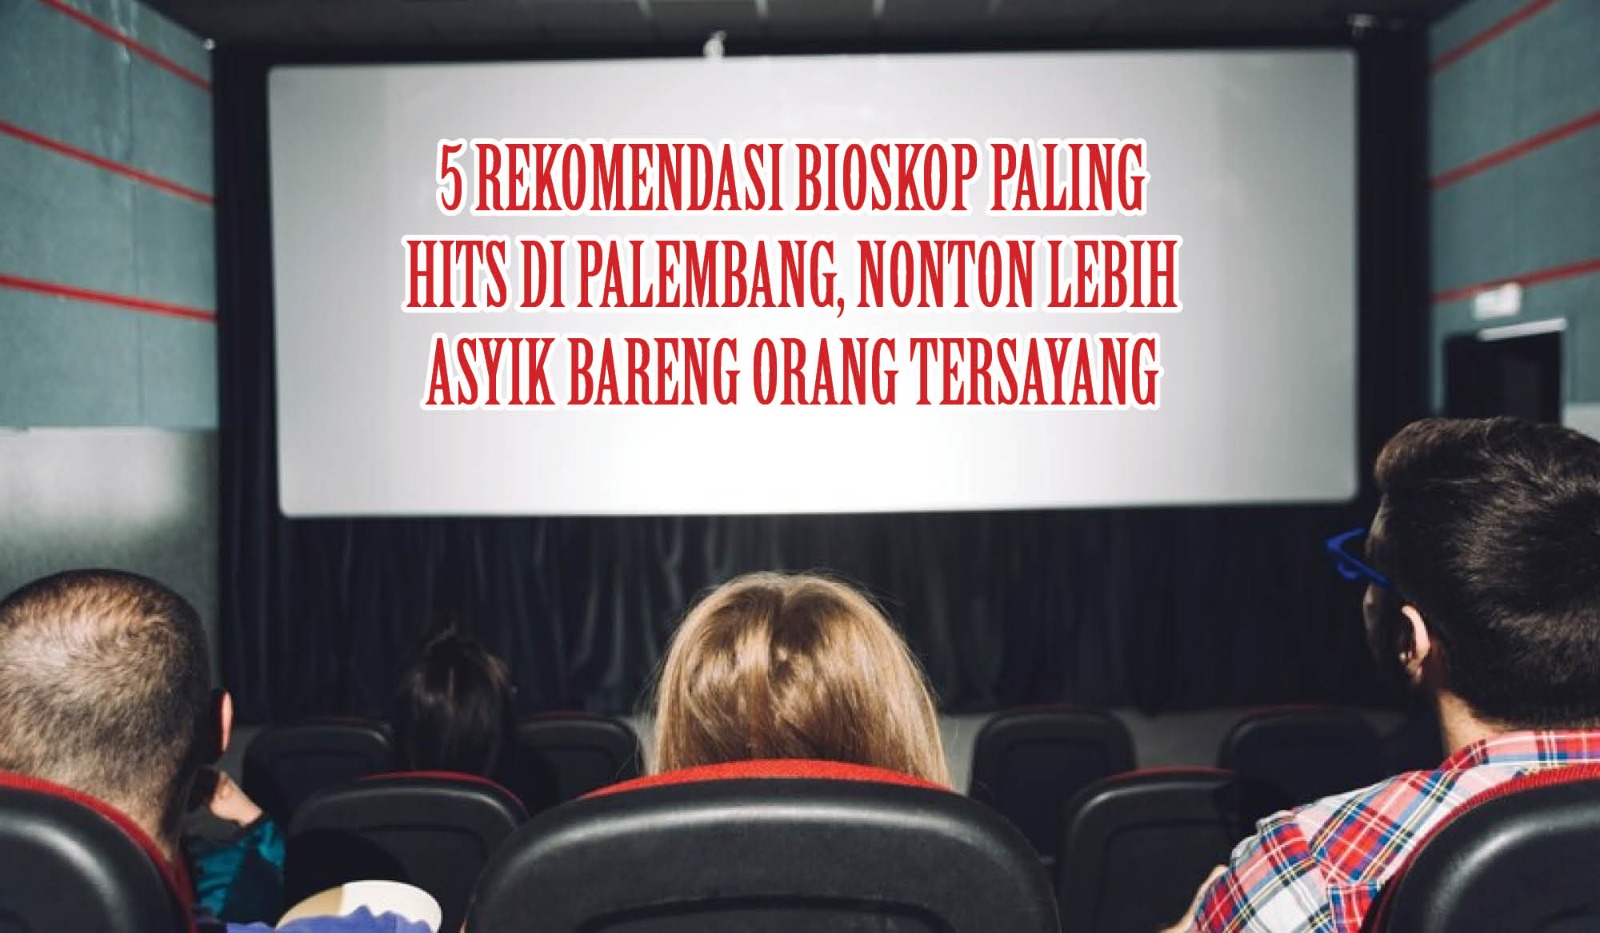 5 Rekomendasi Bioskop Paling Hits di Palembang, Nonton Lebih Asyik Bareng Orang Tersayang